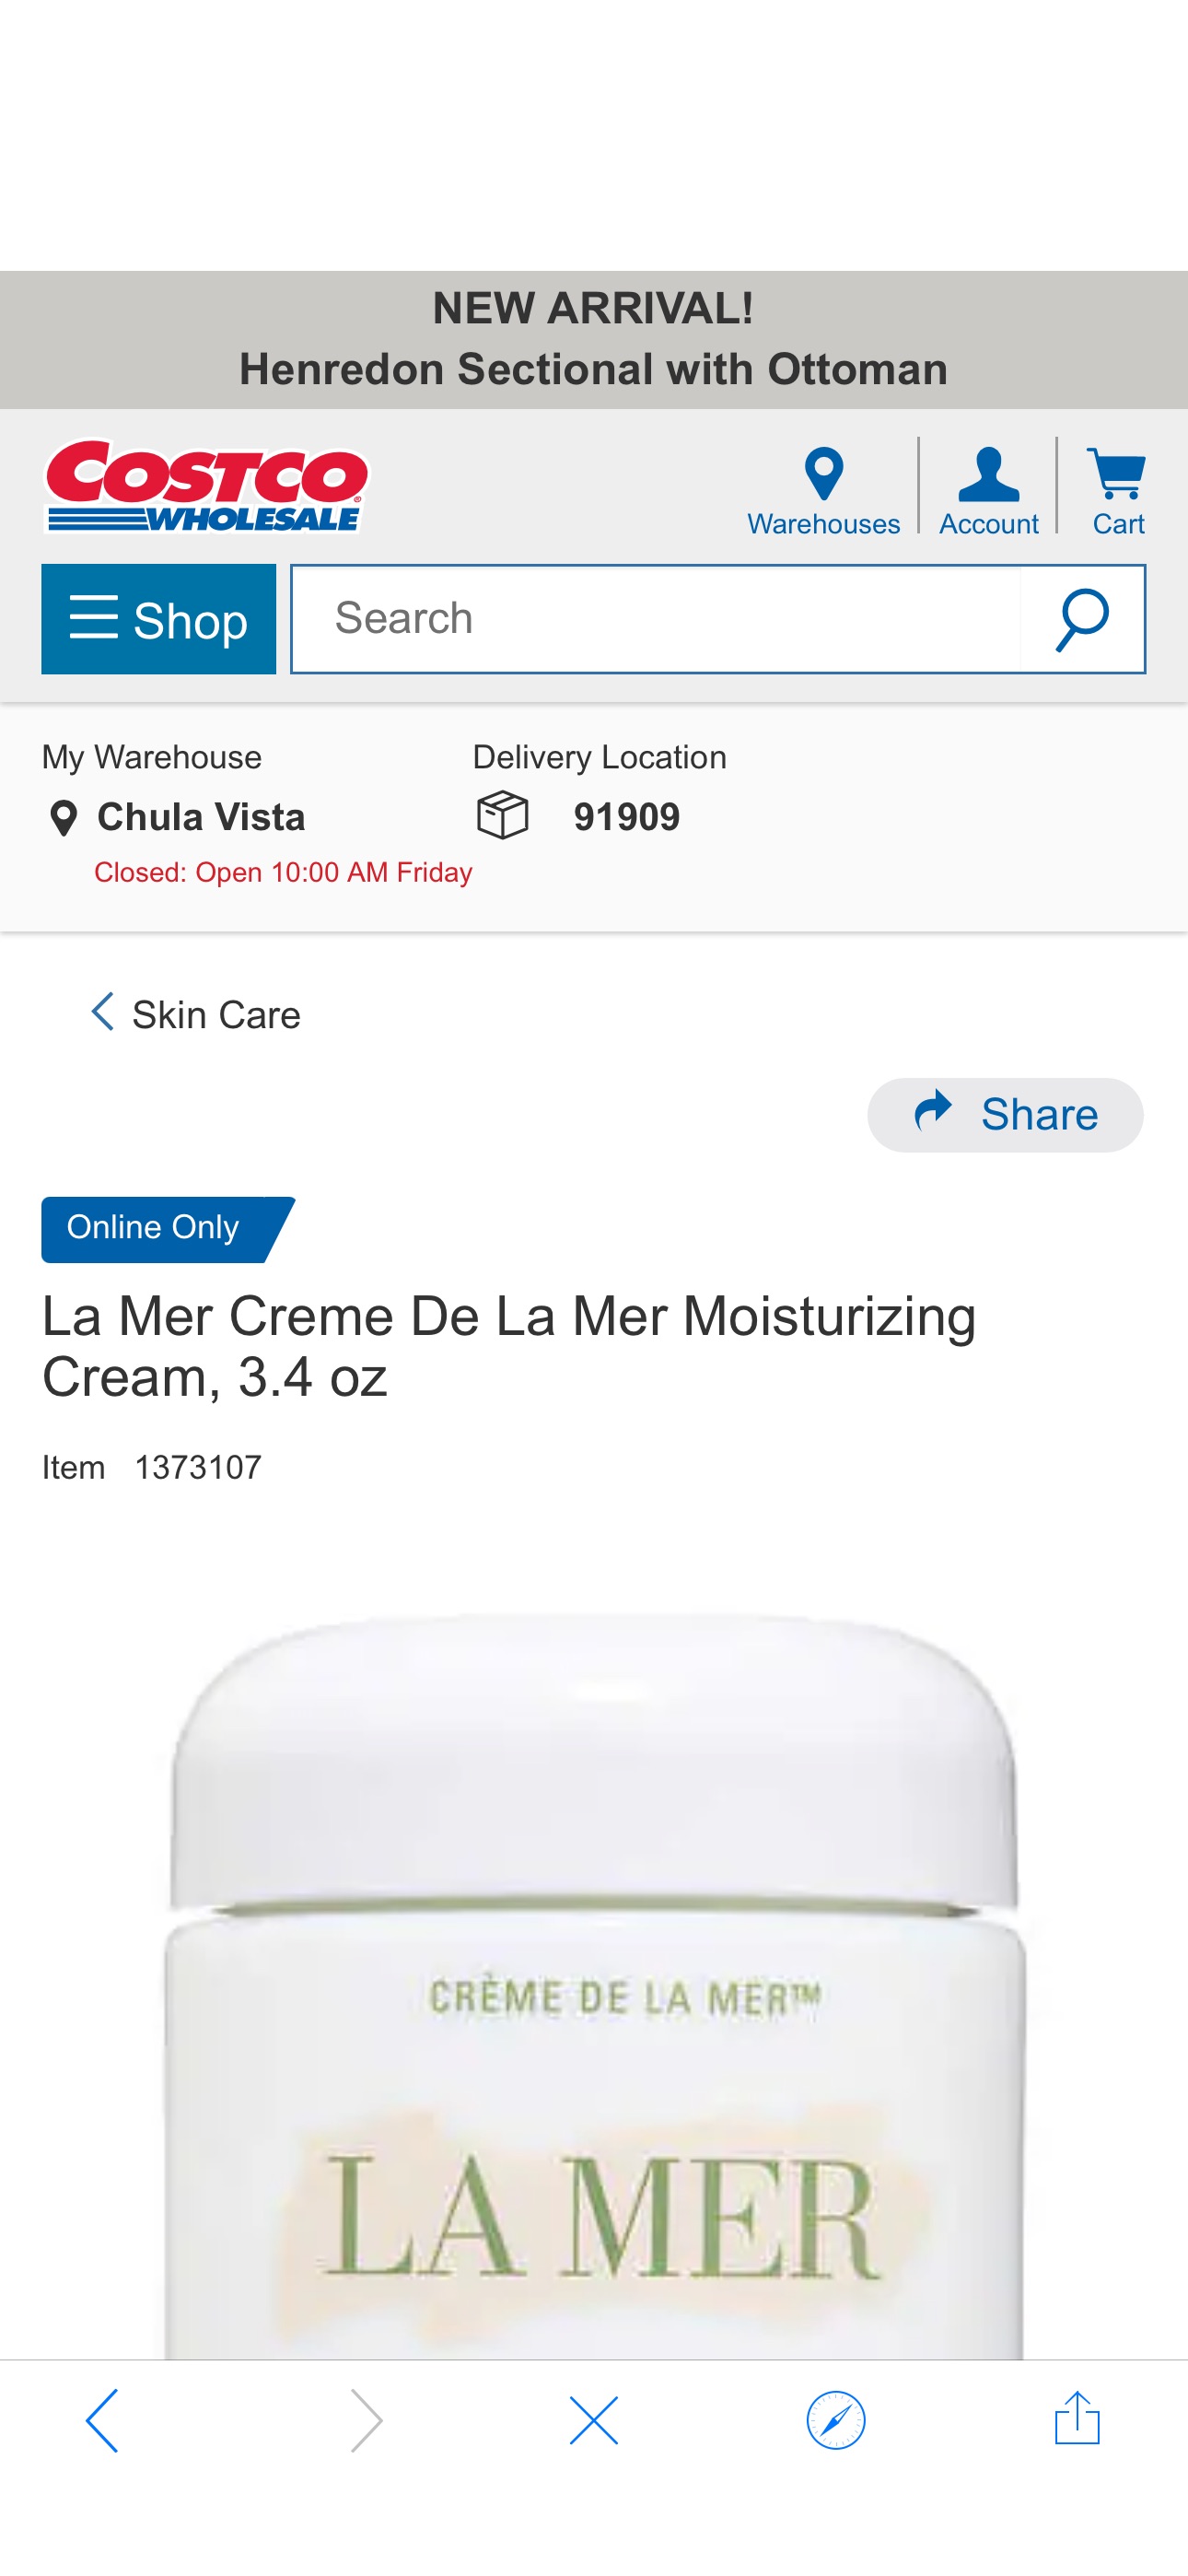 La Mer Creme De La Mer Moisturizing Cream, 3.4 oz  | Costco